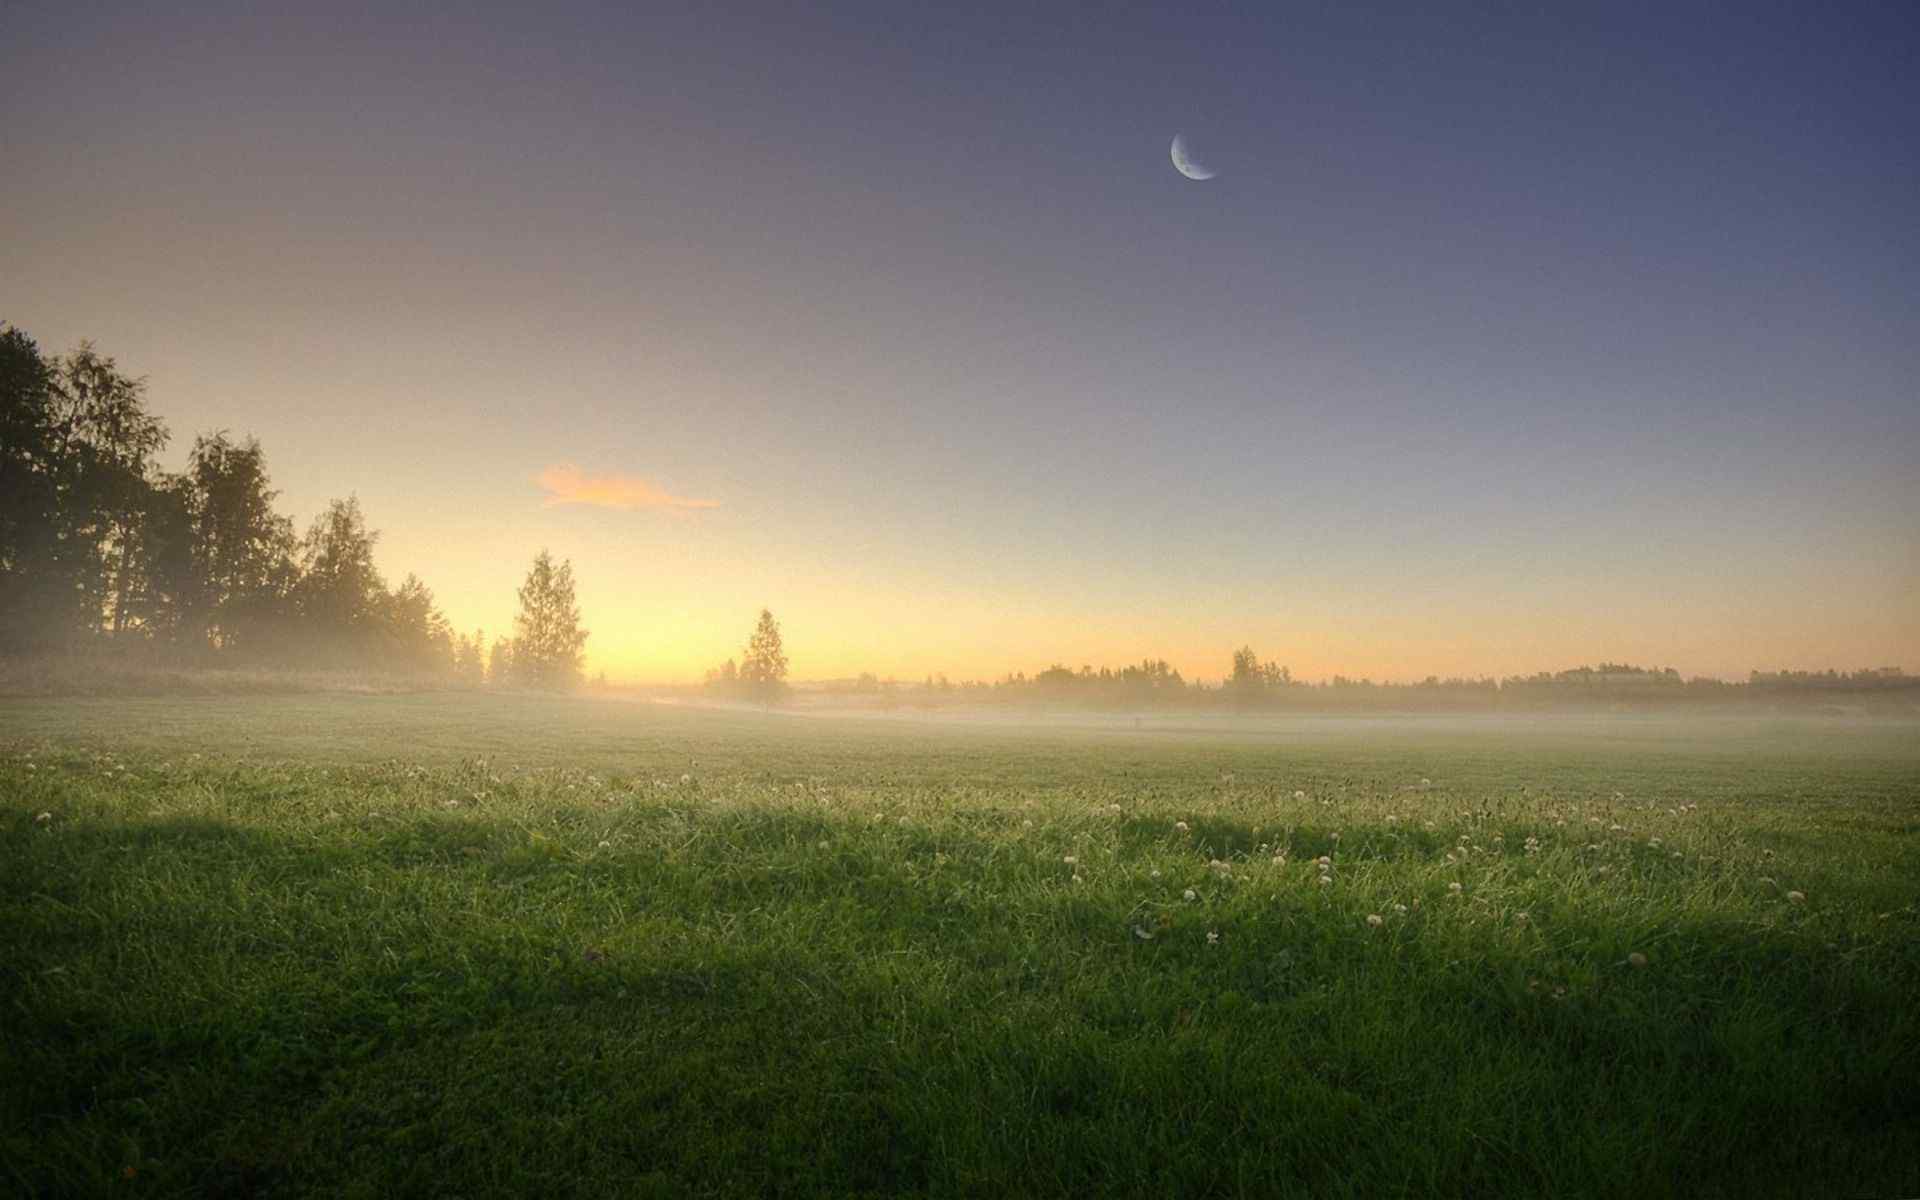 自然清晨的雾漂亮风景win7高清电脑桌面壁纸 第二辑